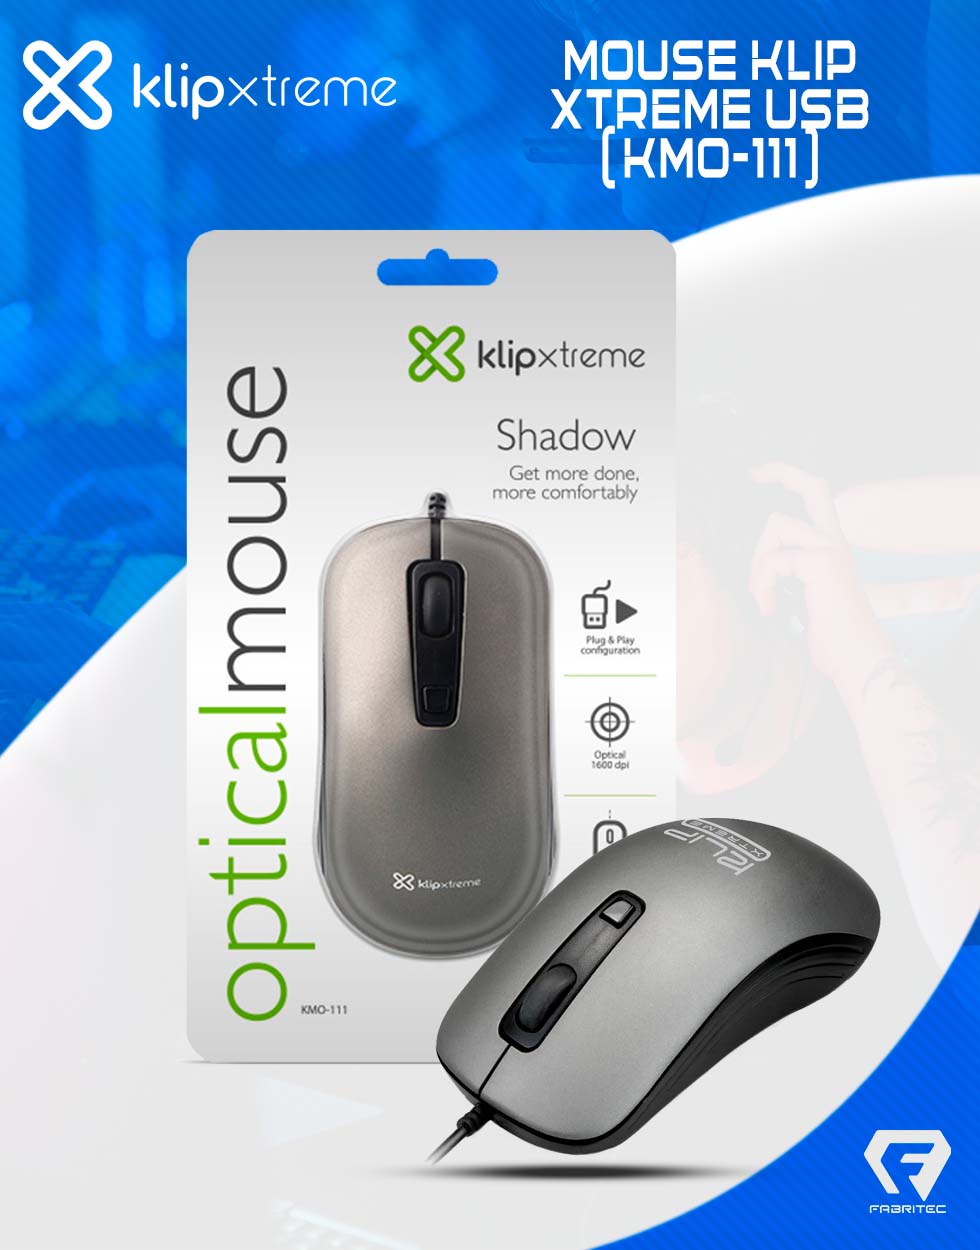 1075-mouse-klip-xtreme-(-kmo-111-)-3